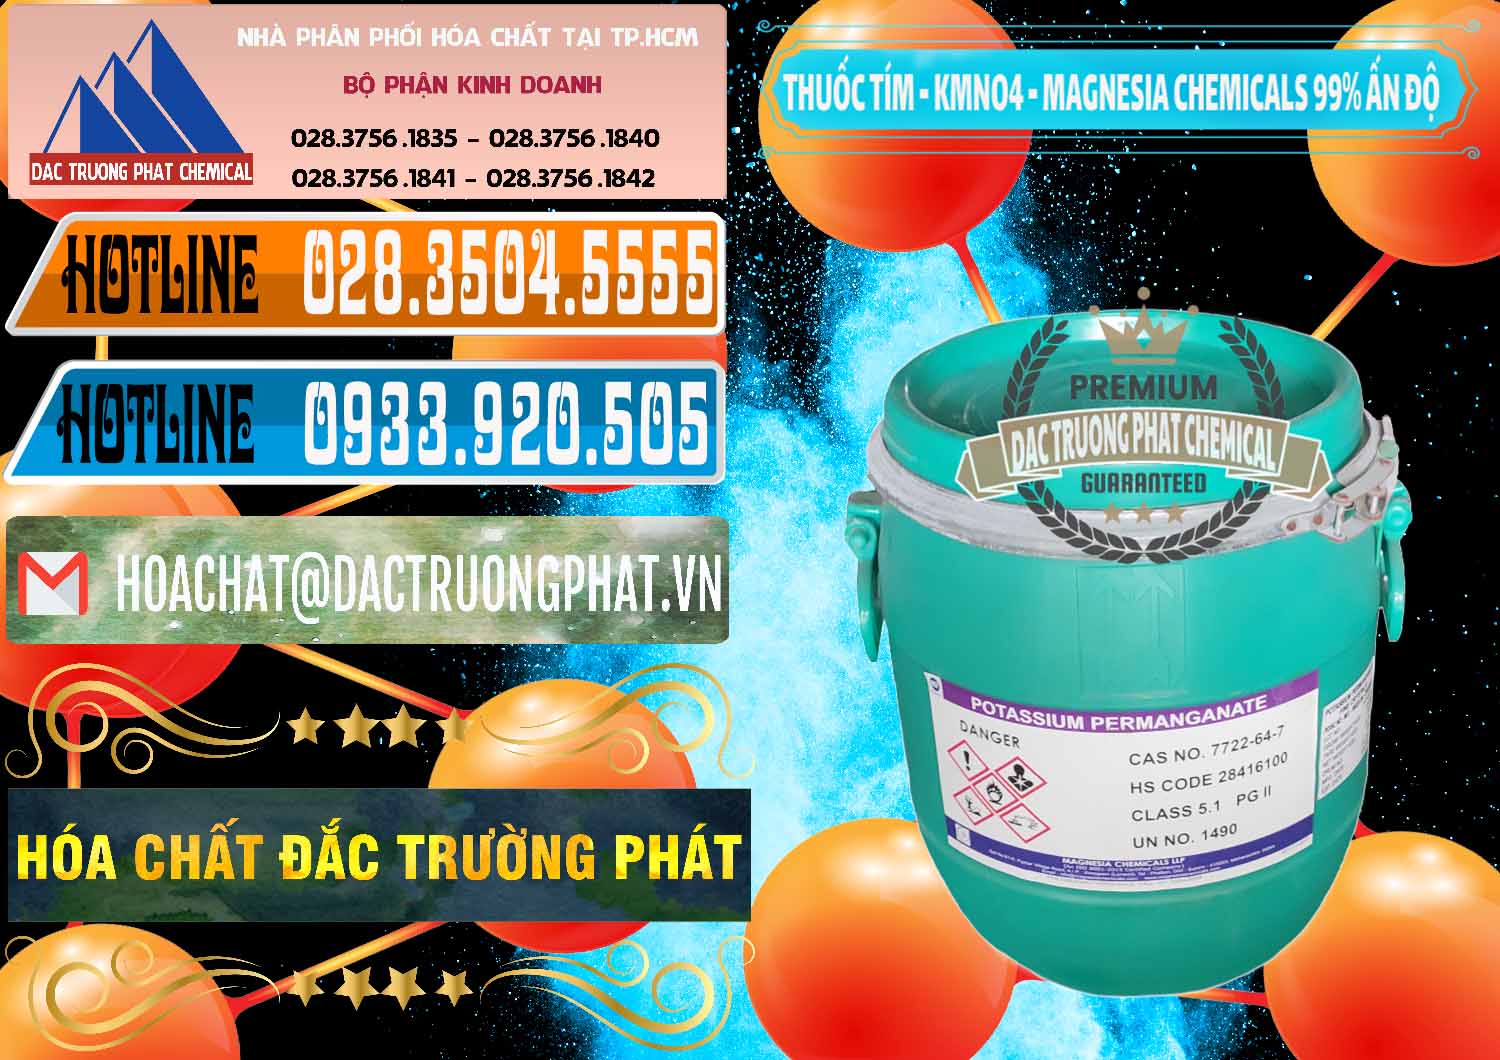 Cty chuyên bán - cung cấp Thuốc Tím - KMNO4 Magnesia Chemicals 99% Ấn Độ India - 0251 - Nơi cung cấp và phân phối hóa chất tại TP.HCM - stmp.net